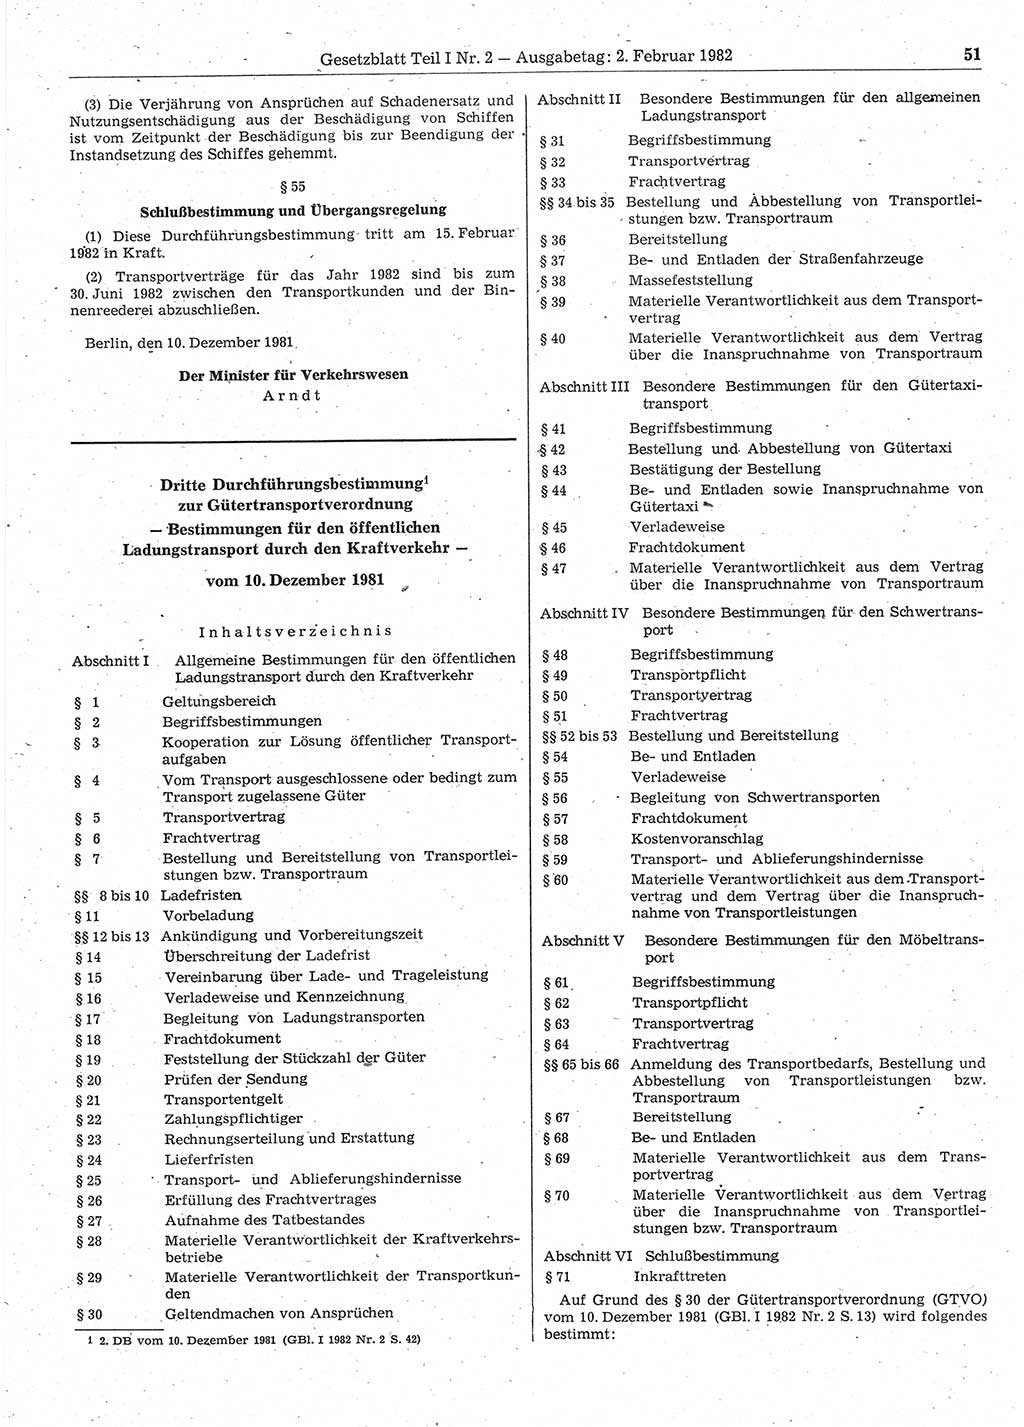 Gesetzblatt (GBl.) der Deutschen Demokratischen Republik (DDR) Teil Ⅰ 1982, Seite 51 (GBl. DDR Ⅰ 1982, S. 51)